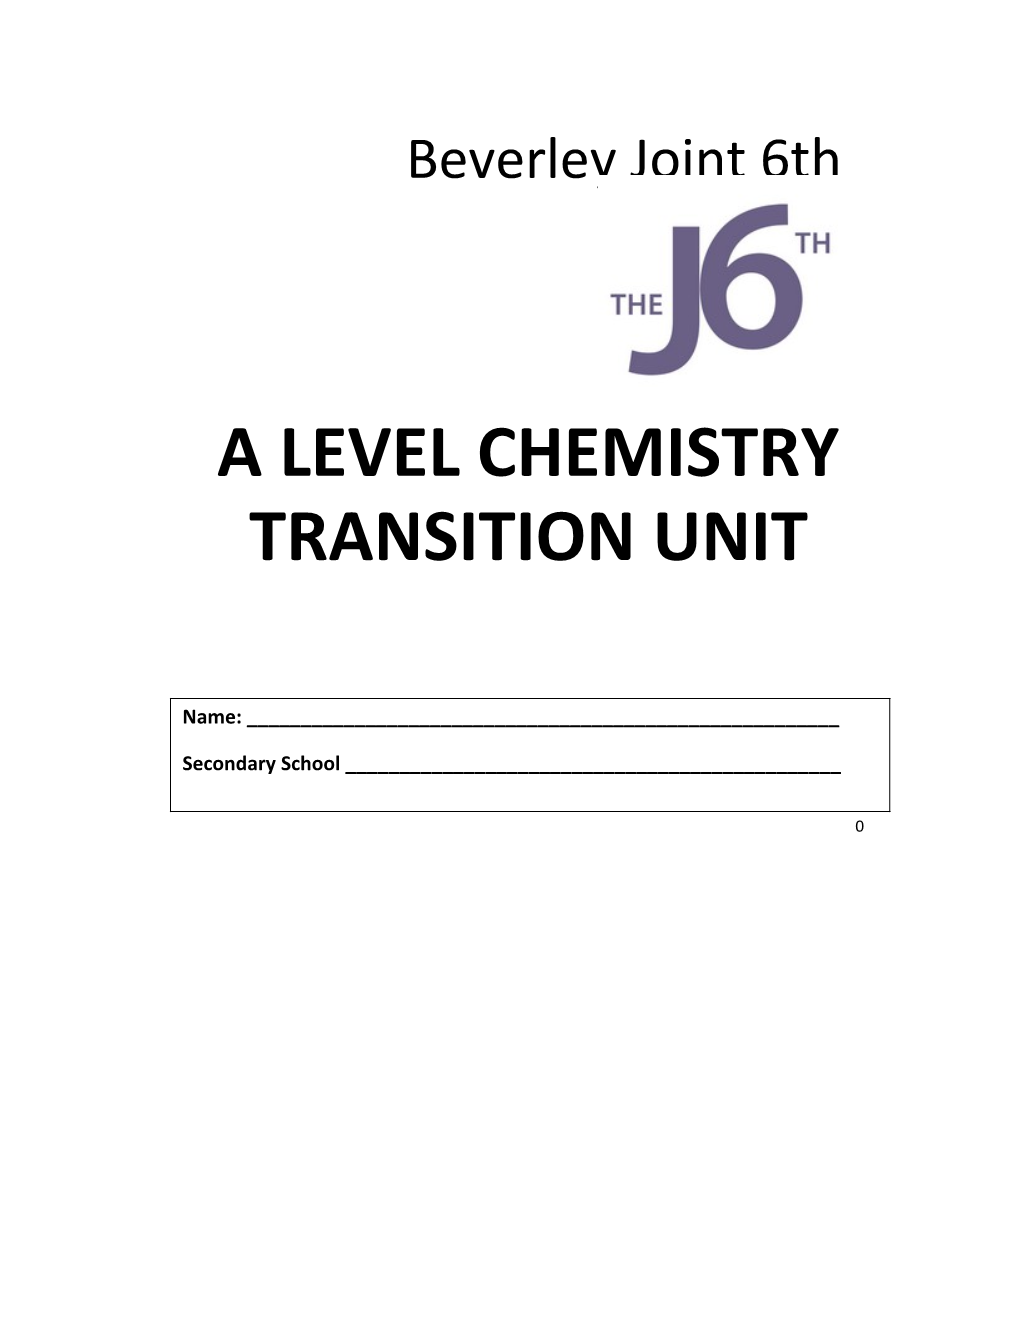 A Level Chemistry Transition Unit